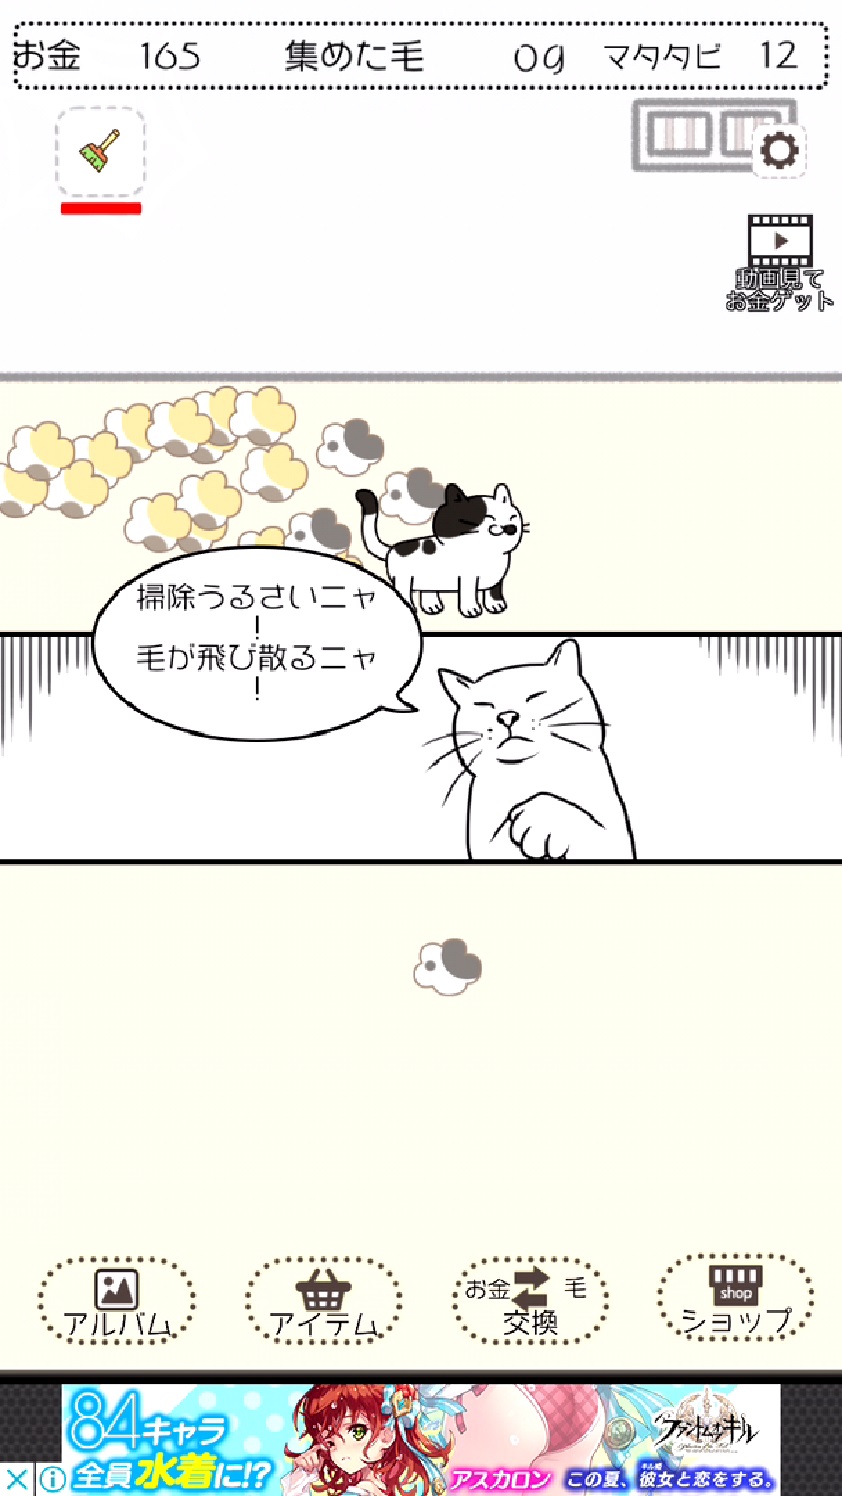 ケケケの猫太郎 -毛を集めて！ねこあつめ- androidアプリスクリーンショット2